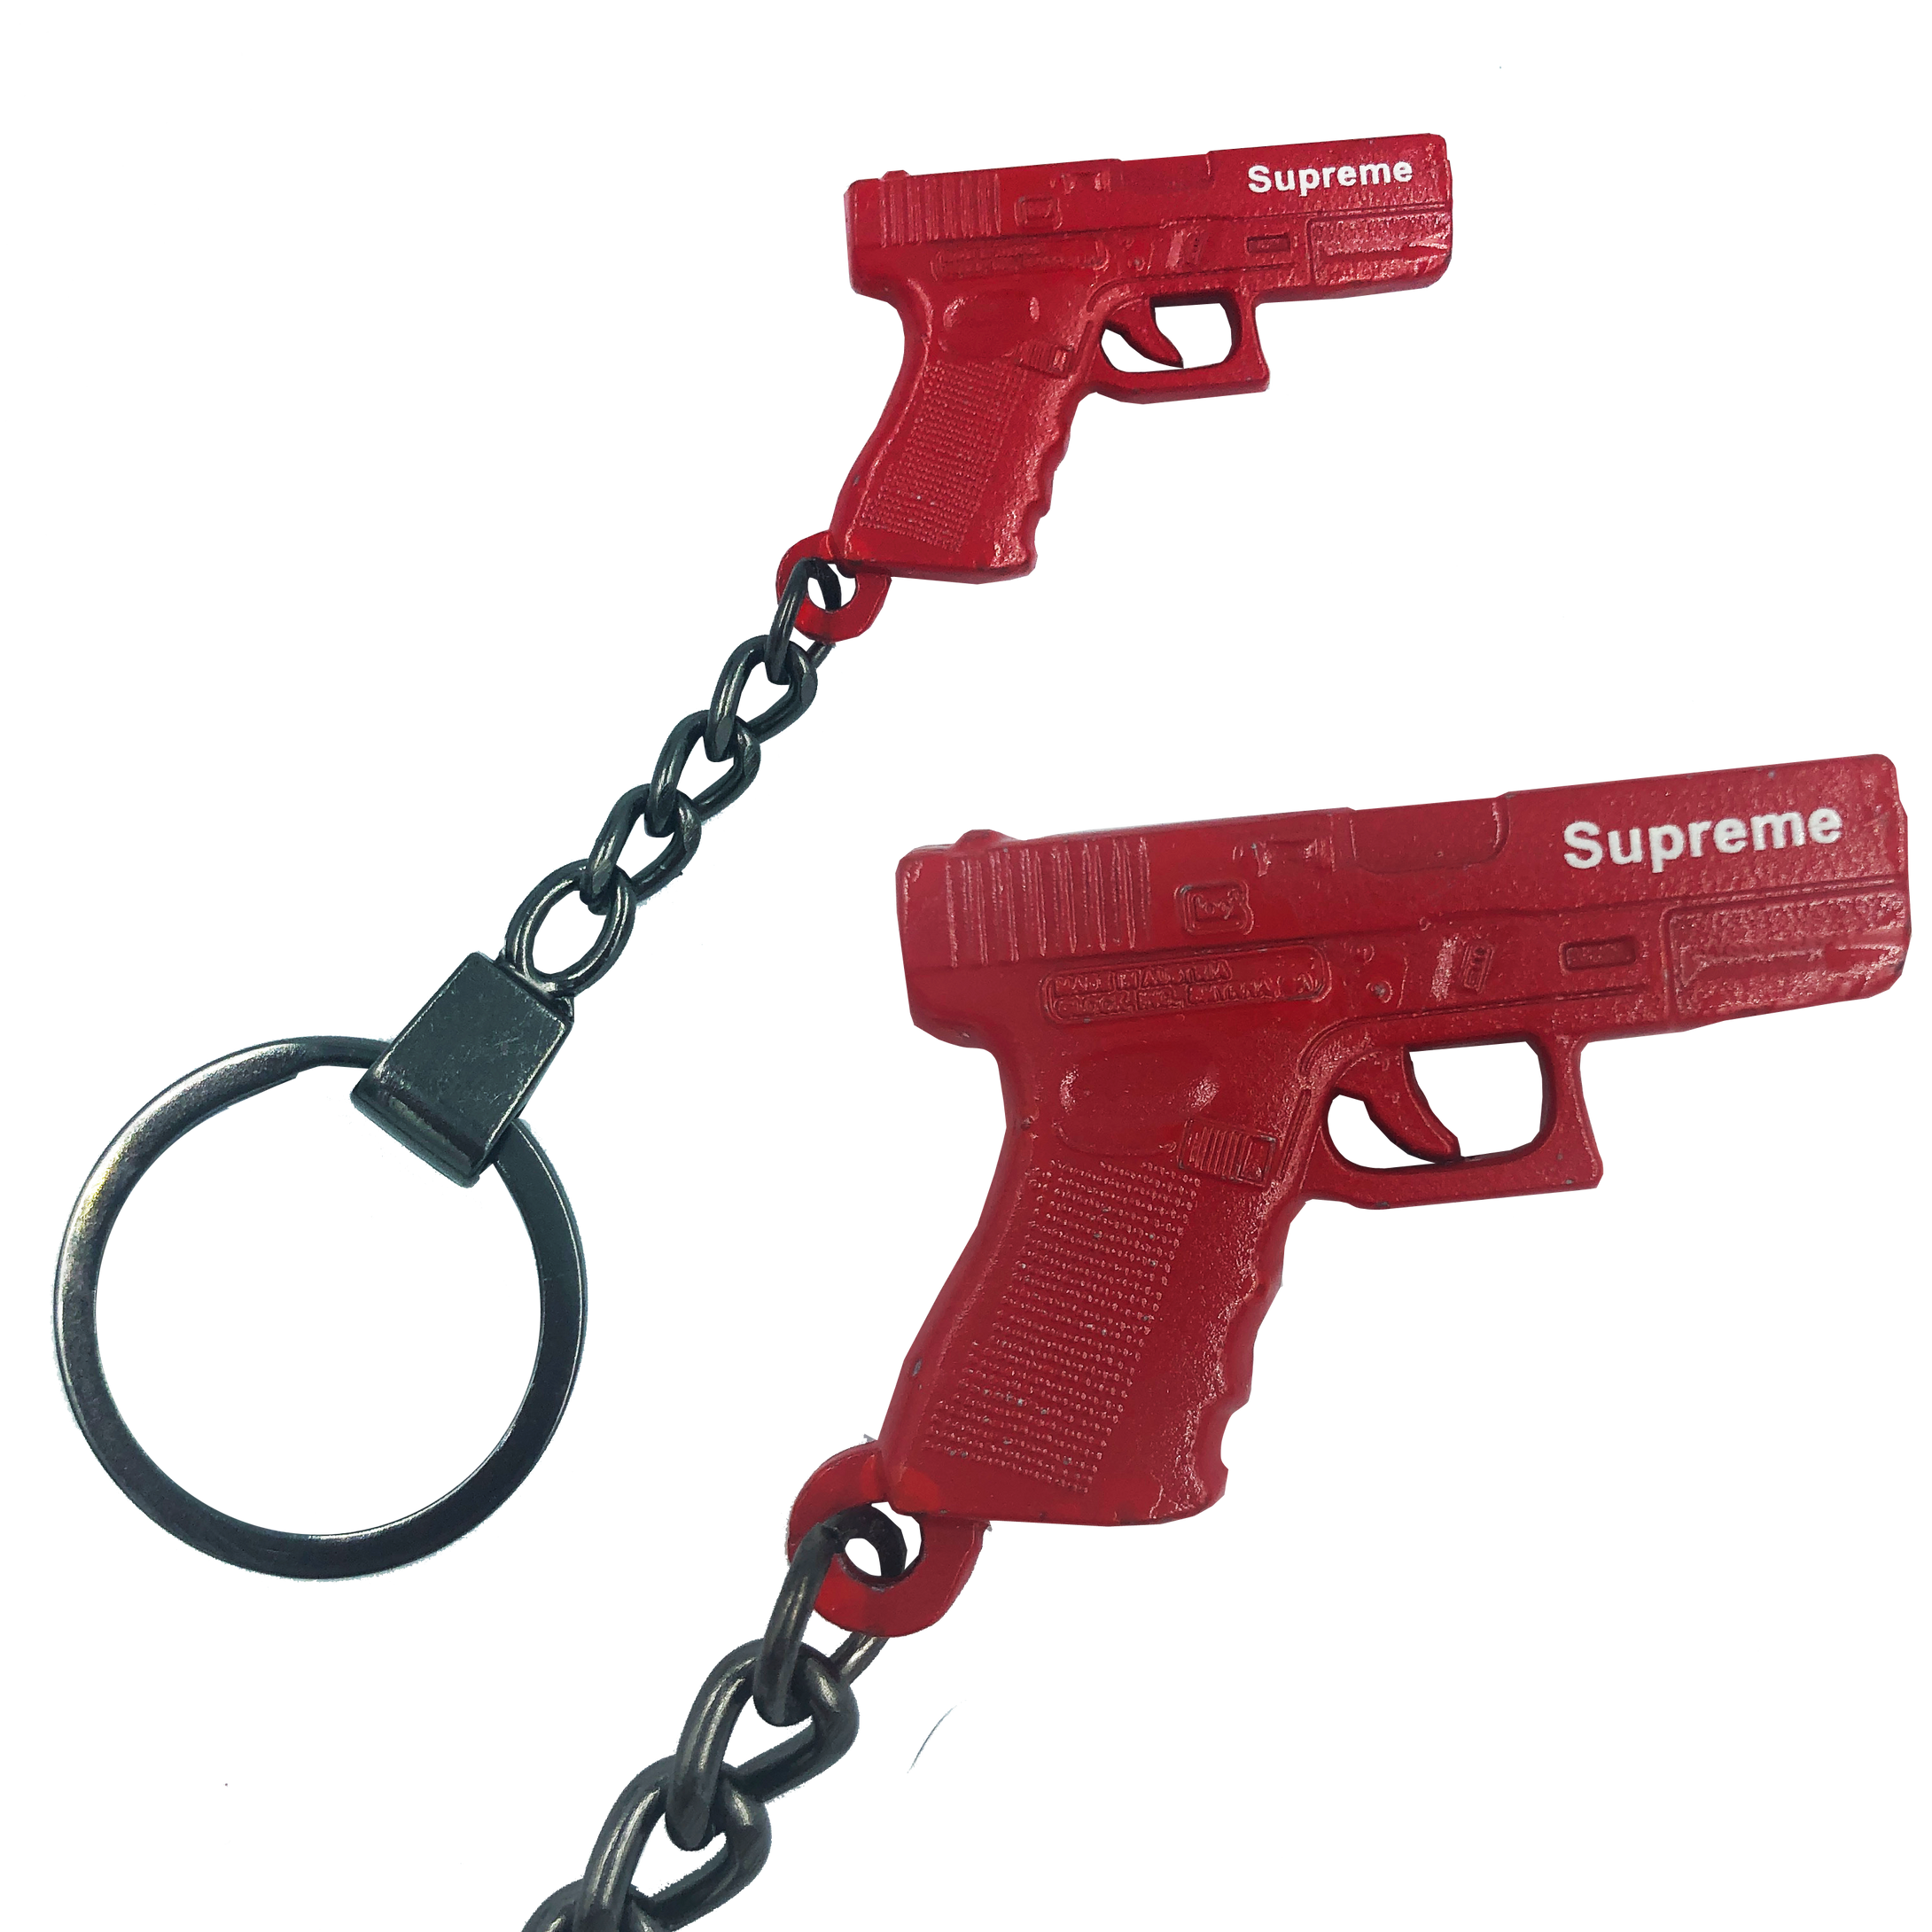 DD-014 Firearms Instructor gun keychain